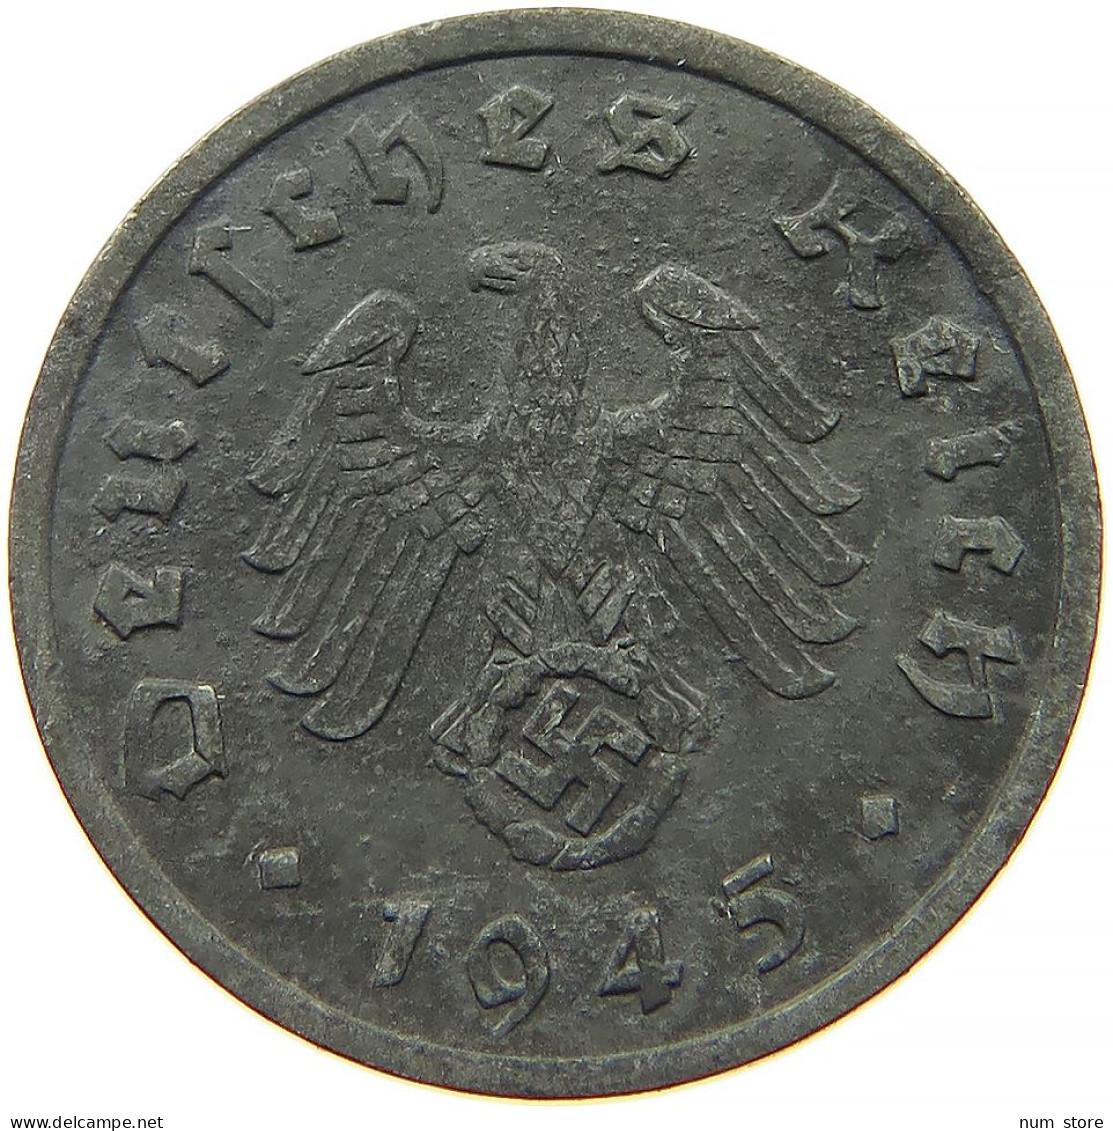 GERMANY 1 REICHSPFENNIG 1945 A #s091 1139 - 1 Reichspfennig